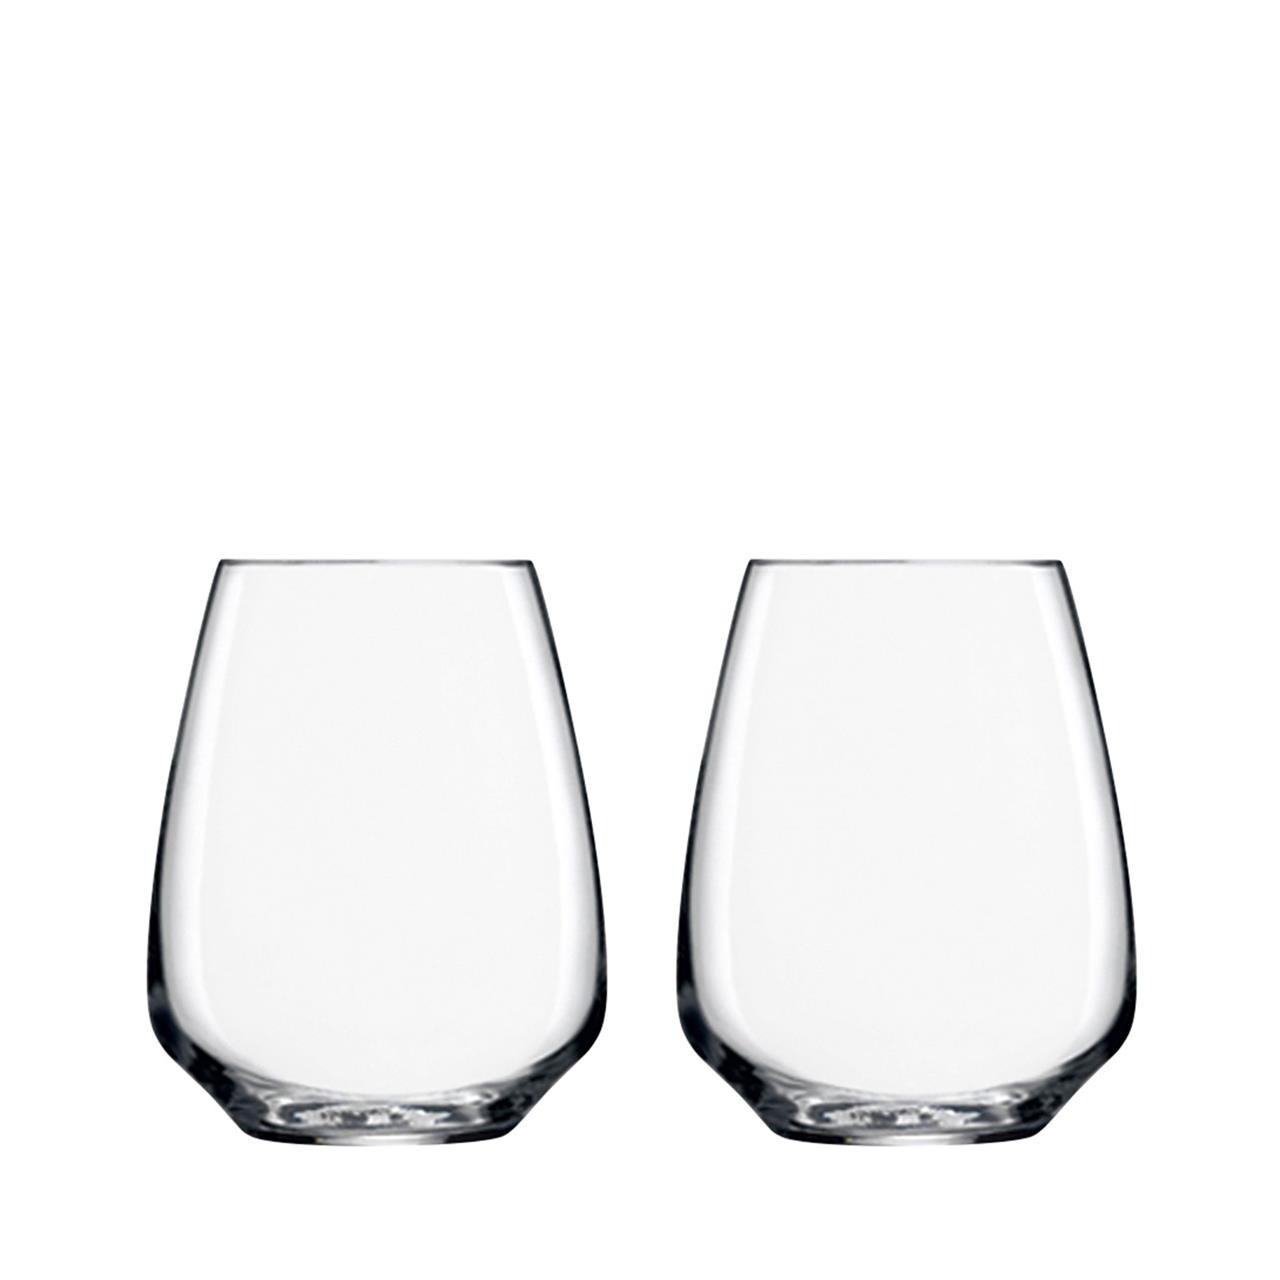 LUIGI BORMIOLI Atelier vandglas/hvidvinsglas 40 cl 2 stk